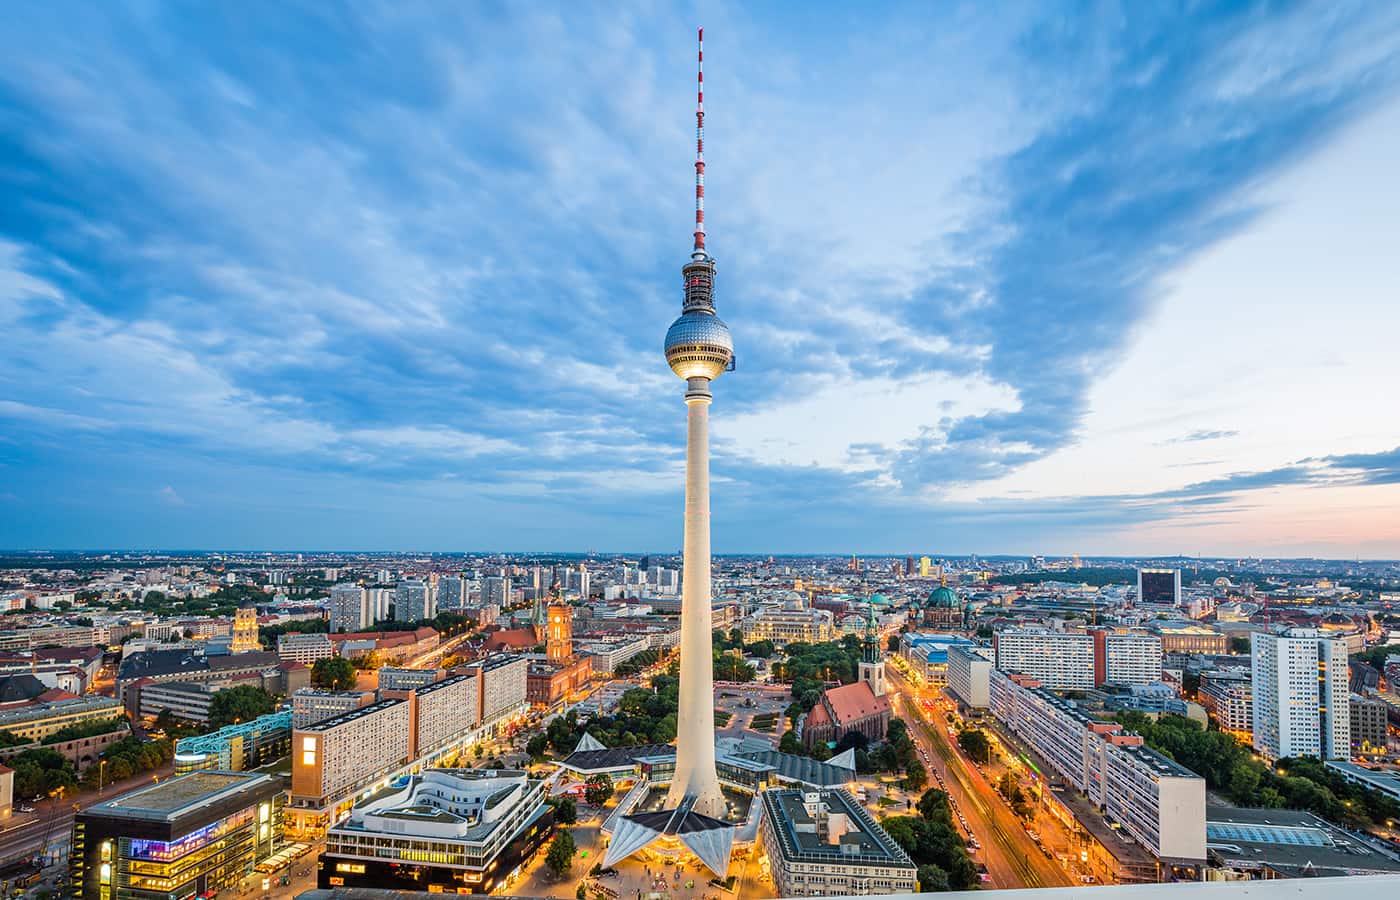 Blick auf den Fernsehturm, Berlin-Alexanderplatz